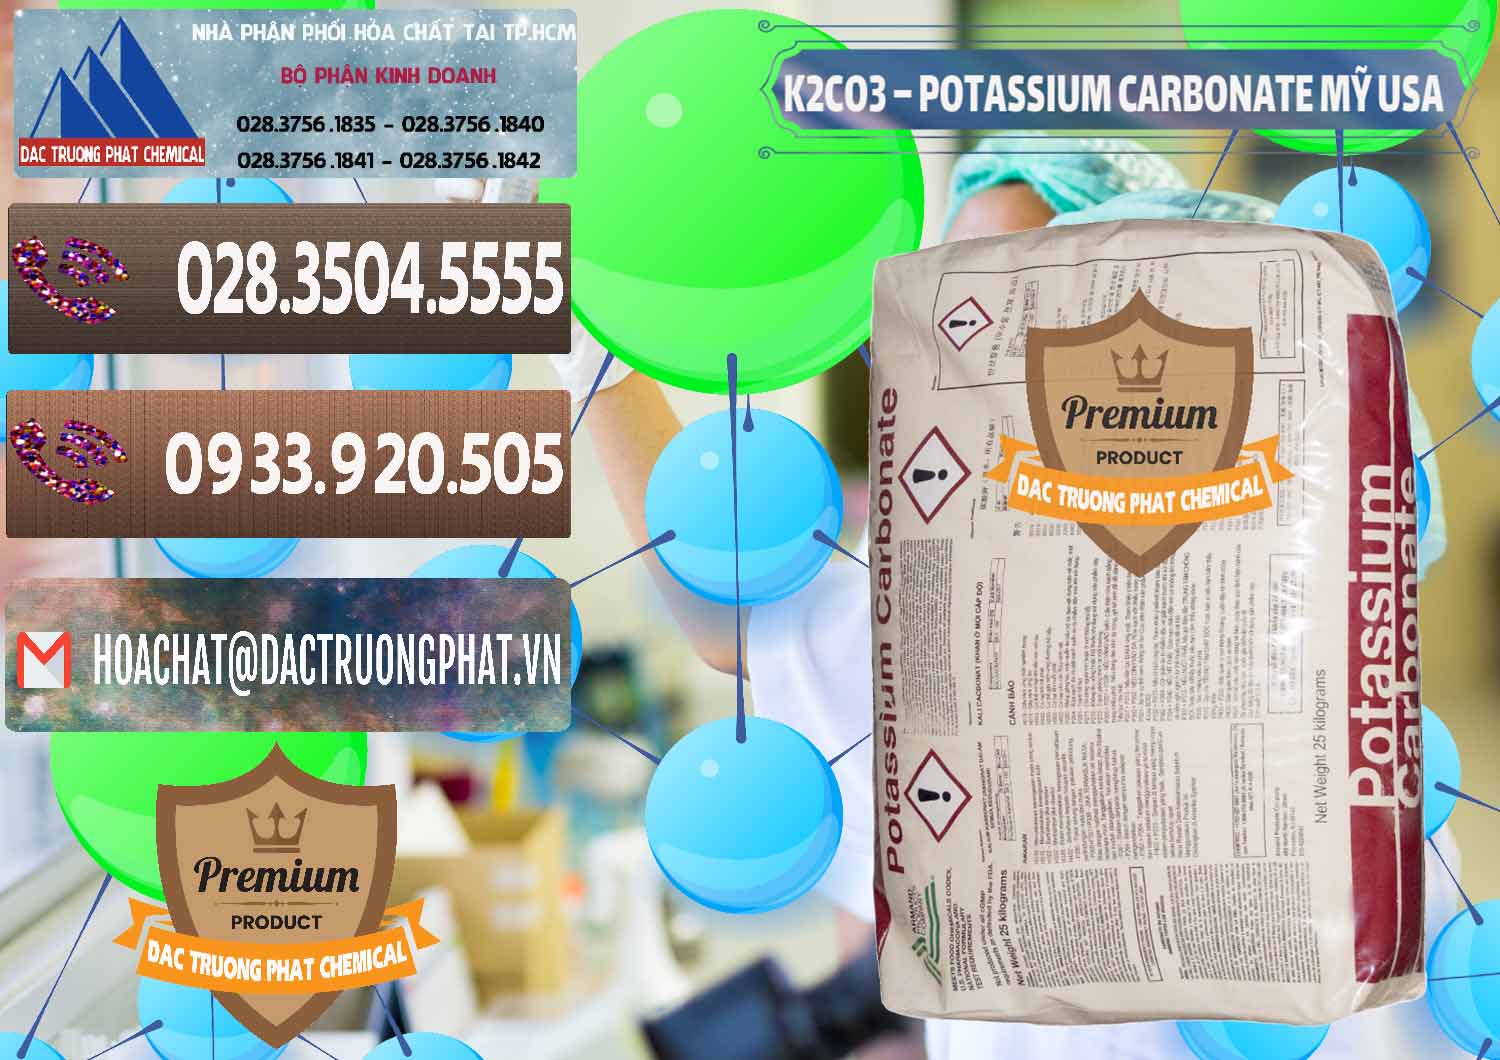 Nơi chuyên cung cấp - bán K2Co3 – Potassium Carbonate Mỹ USA - 0082 - Cty cung cấp và bán hóa chất tại TP.HCM - hoachatviet.net